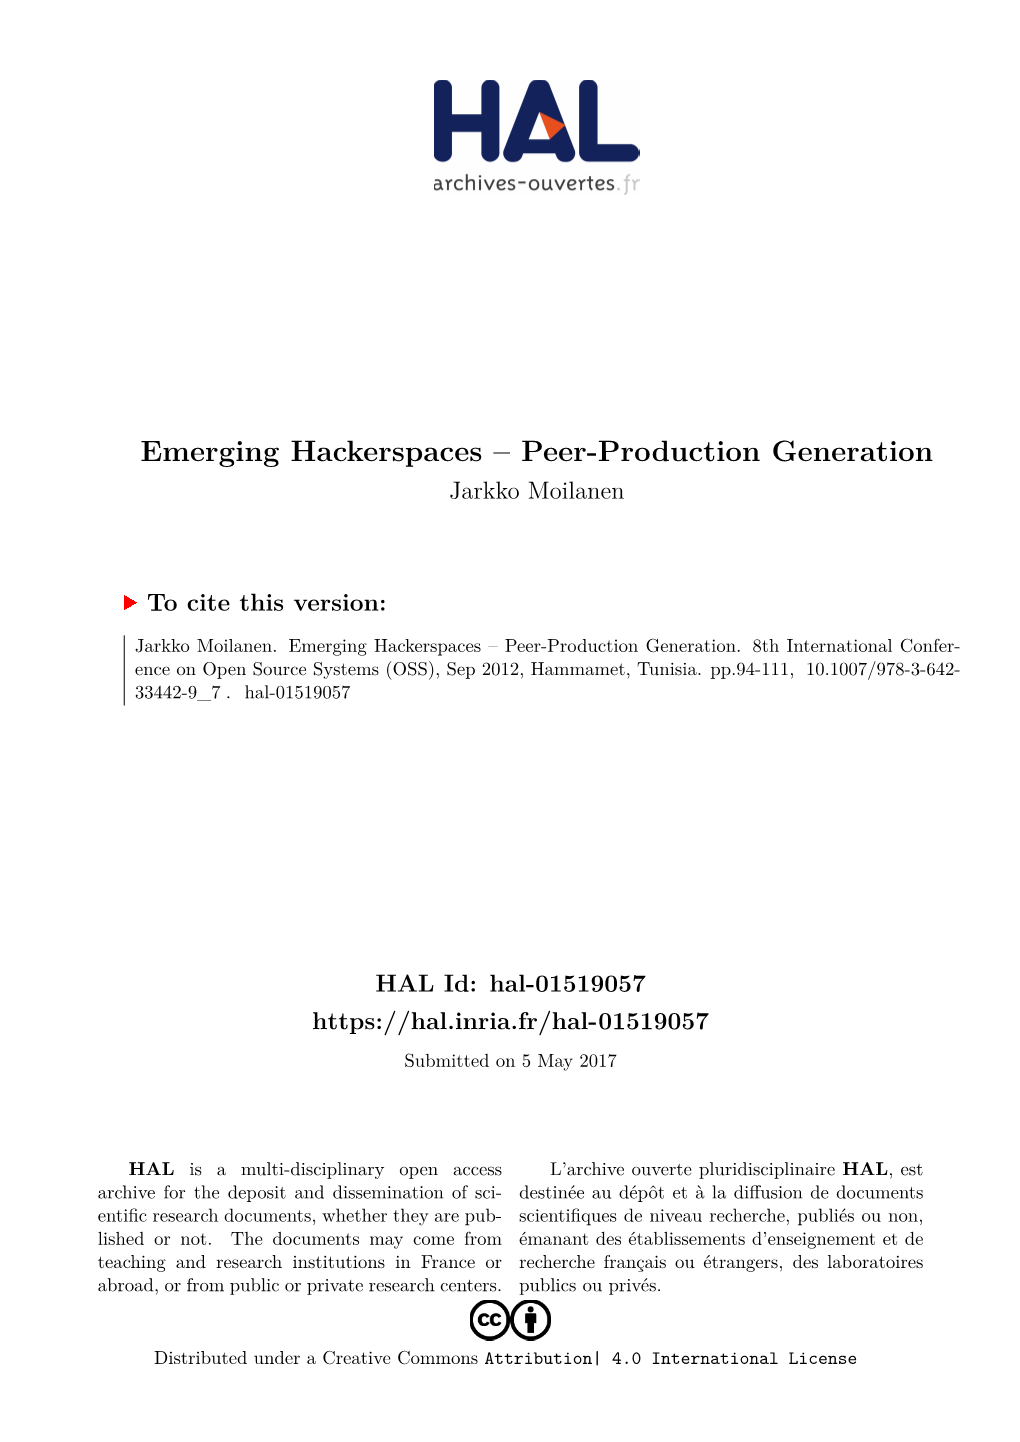 Emerging Hackerspaces – Peer-Production Generation Jarkko Moilanen